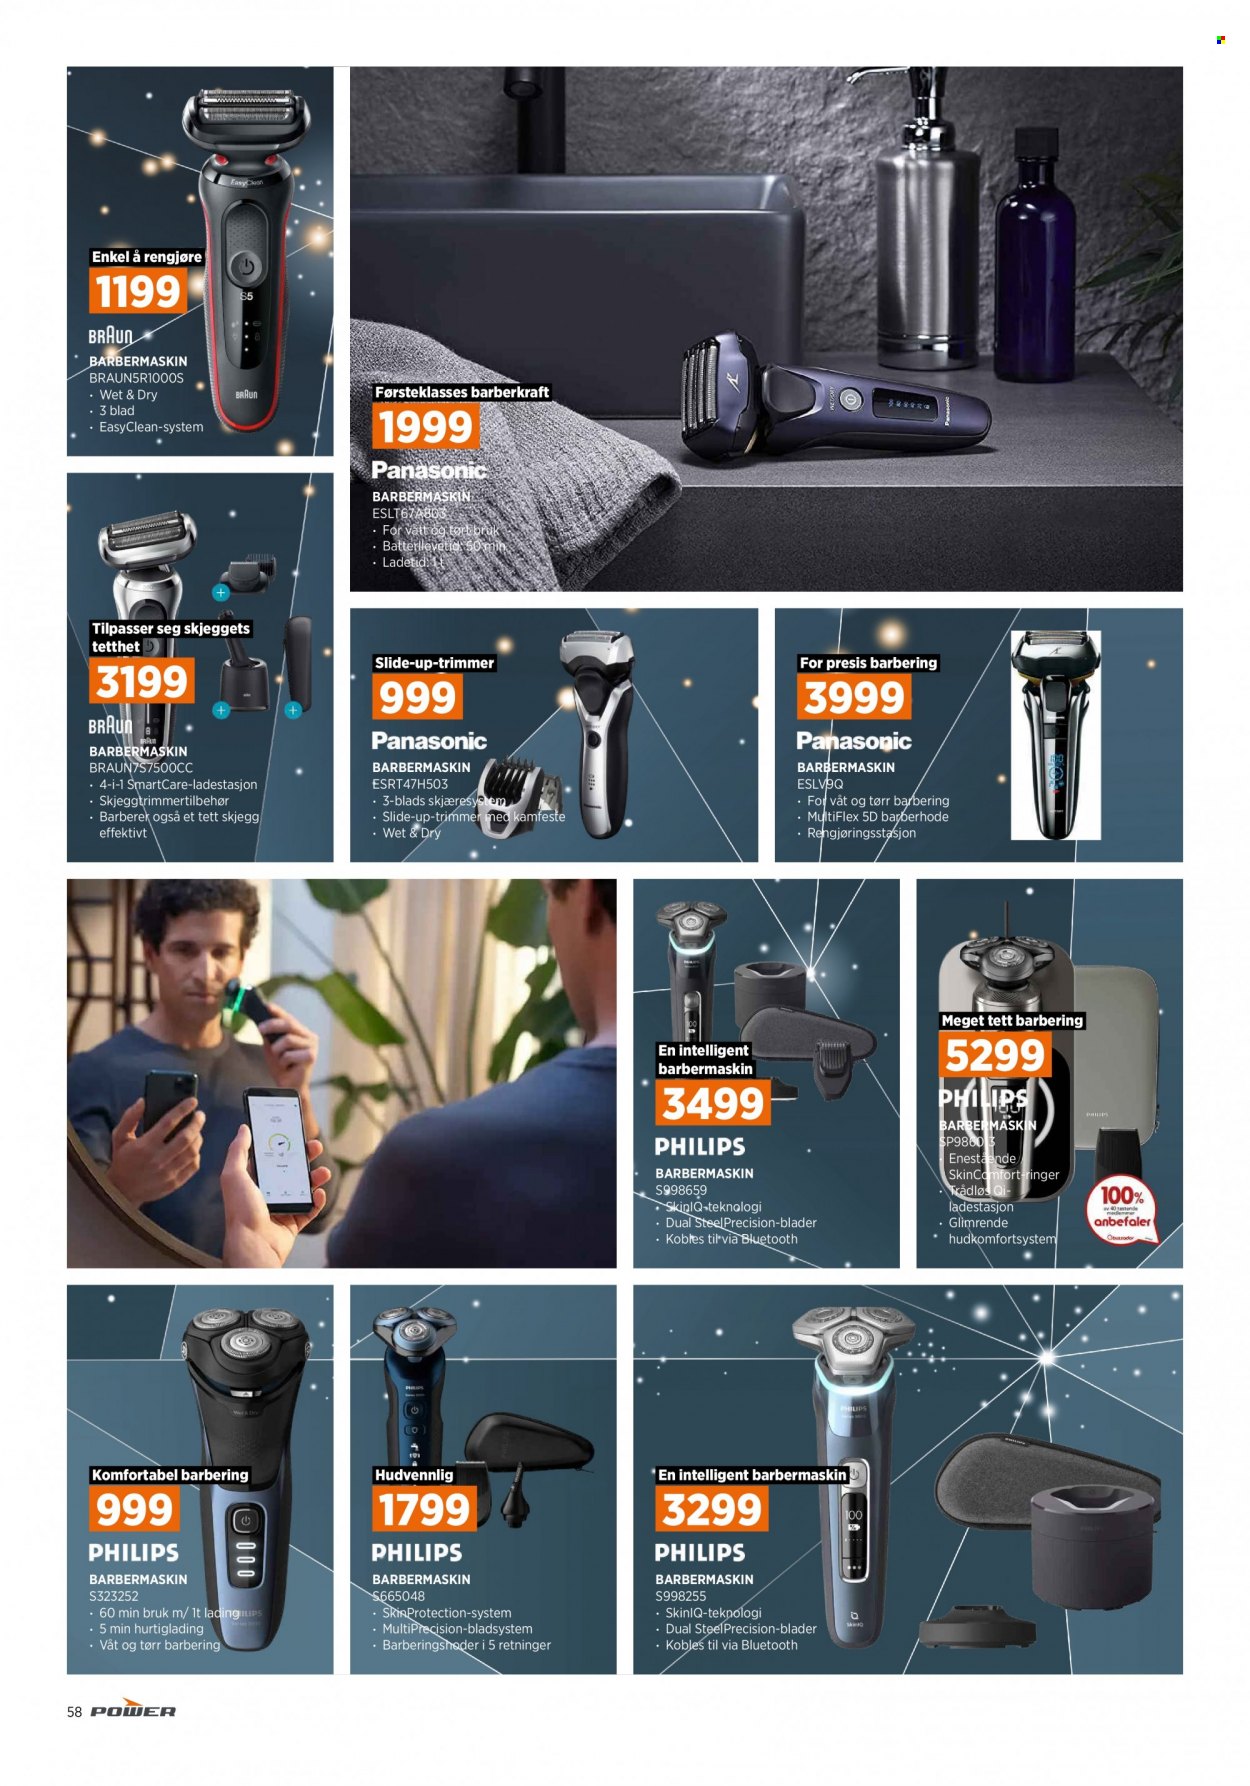 thumbnail - Kundeavis Power - Produkter fra tilbudsaviser - Panasonic, Philips, ladestasjon, trimmer, barbermaskin. Side 58.